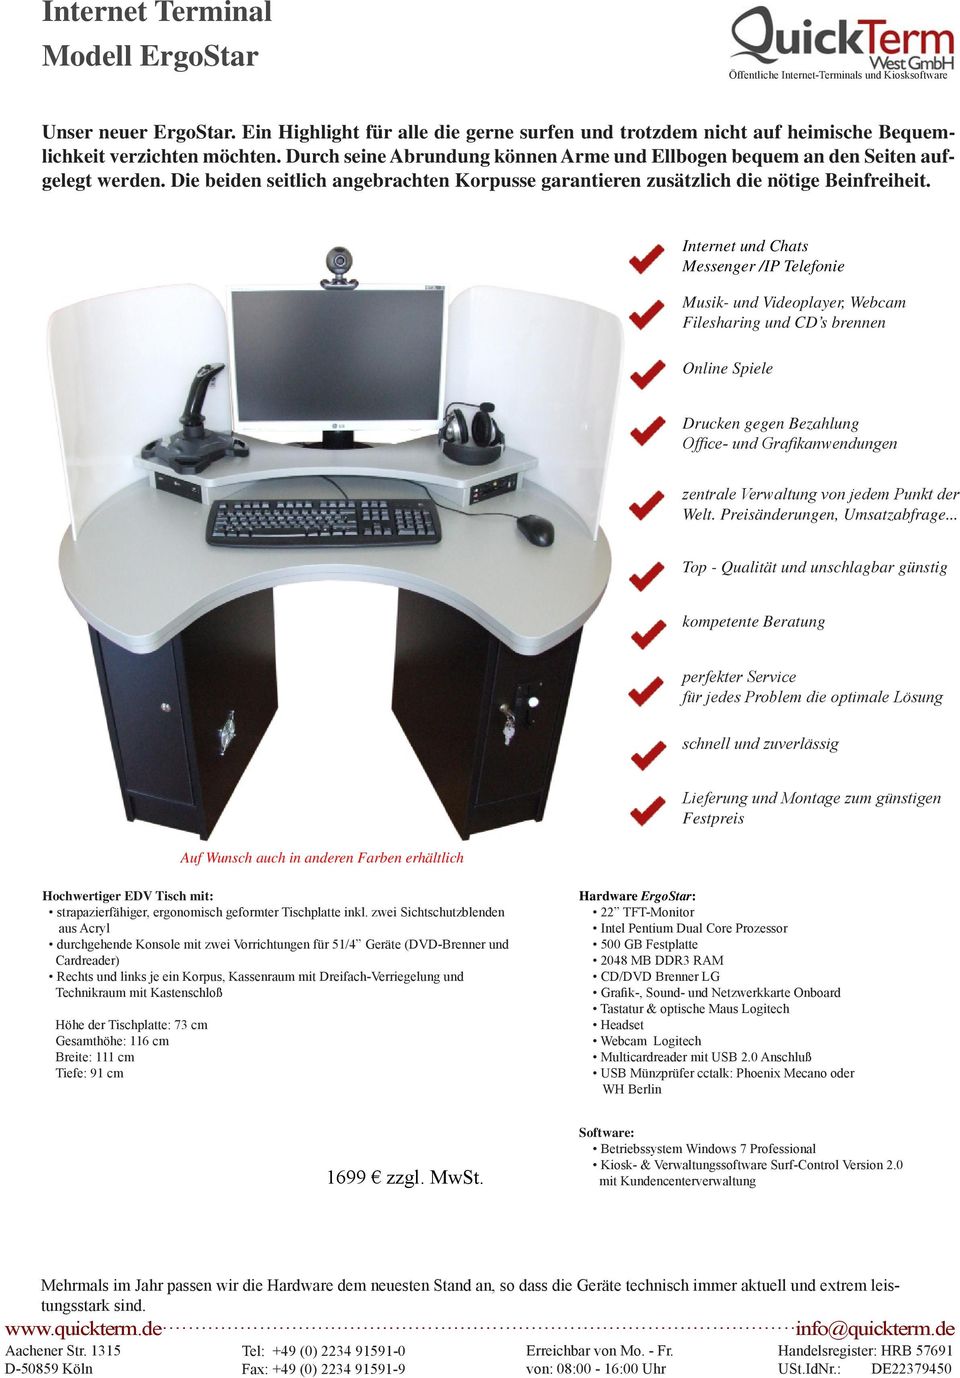 strapazierfähiger, ergonomisch geformter Tischplatte inkl.